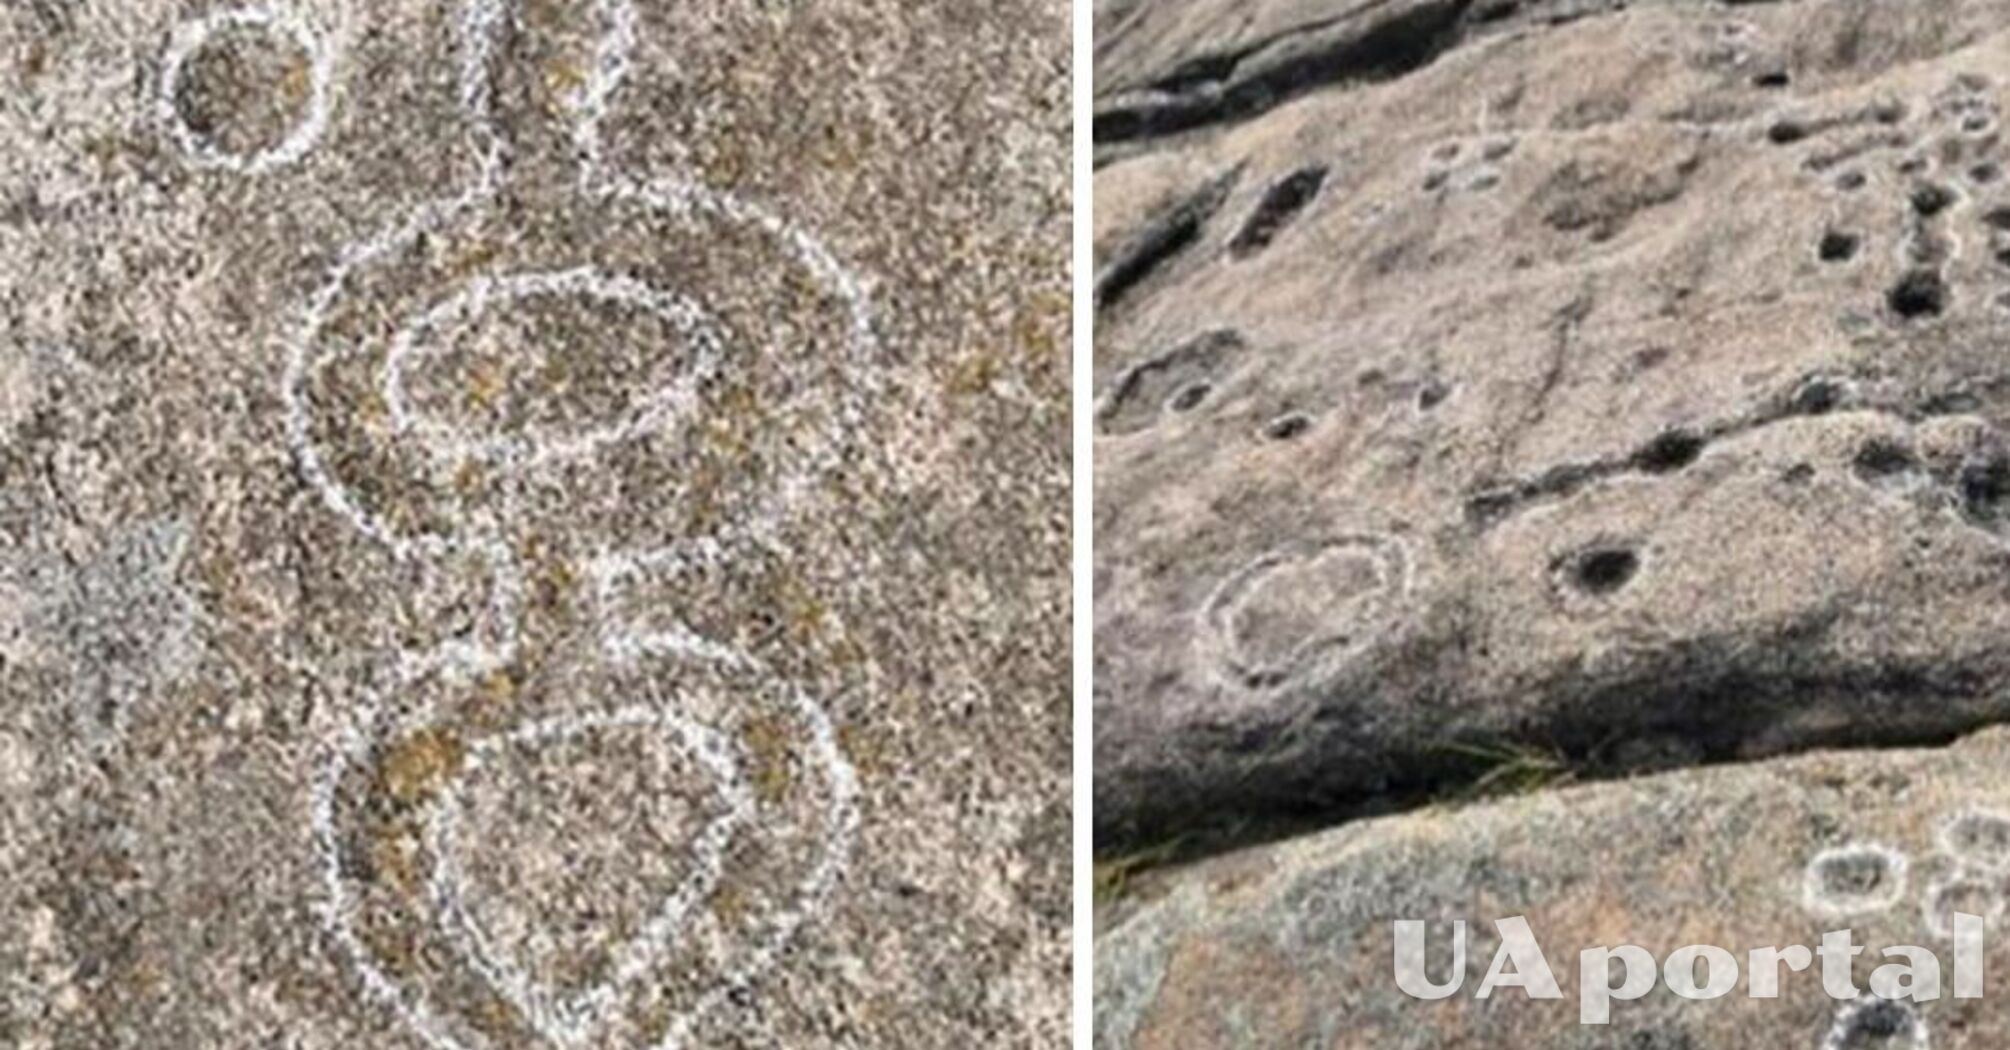 Загадочные наскальные рисунки, которым может быть 6-11 тысяч лет, нашли в Китае (фото)